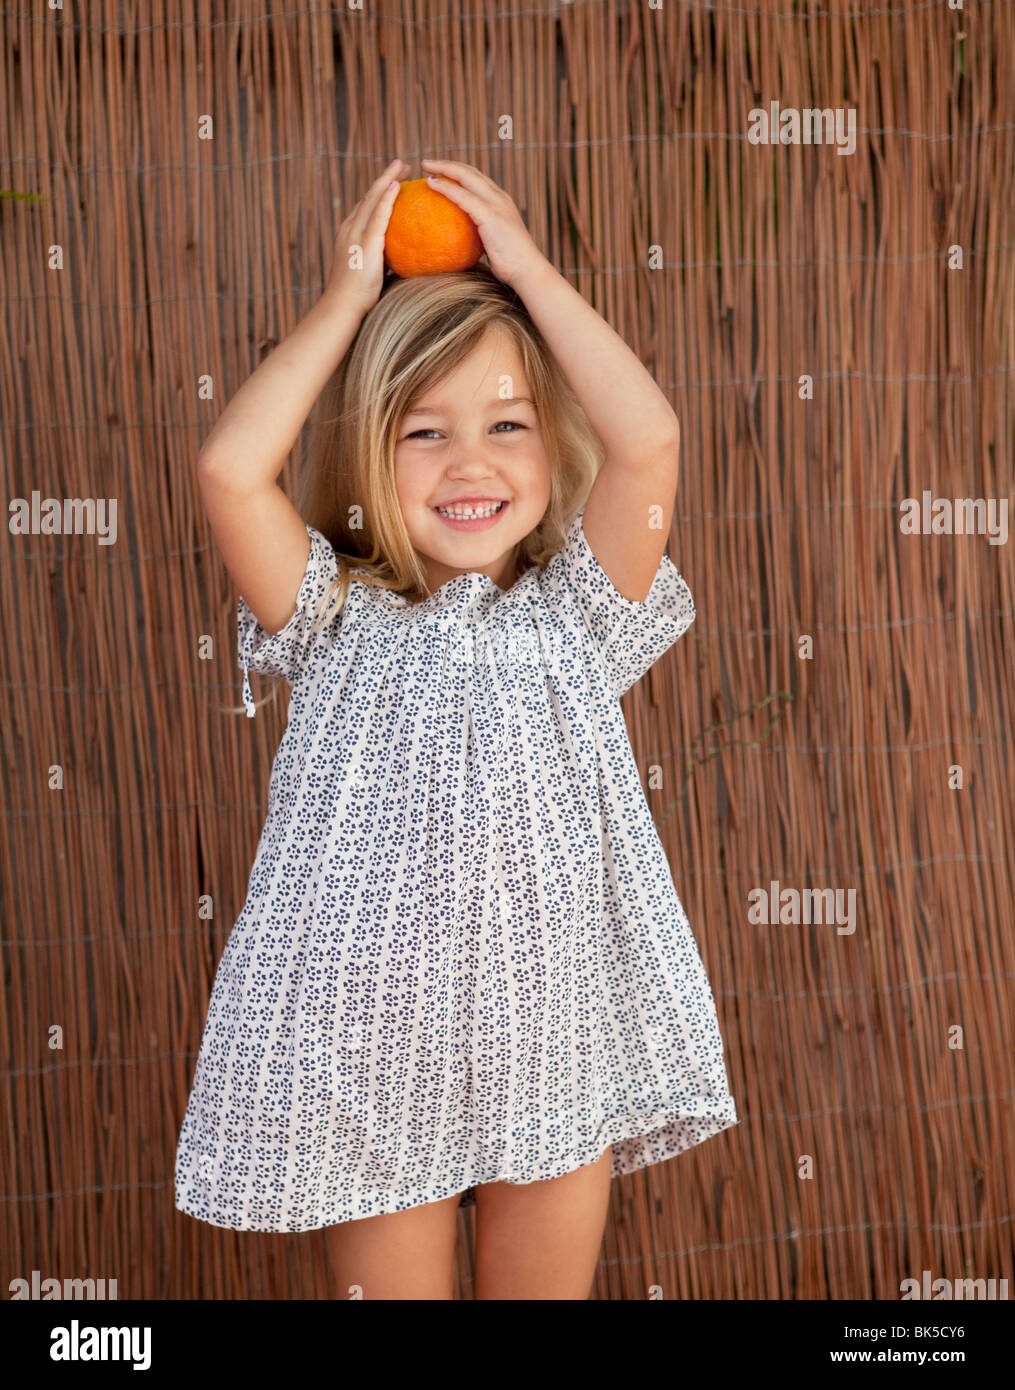 Junges Mädchen im Sonnenkleid hält eine Orange auf dem Kopf Stockfoto